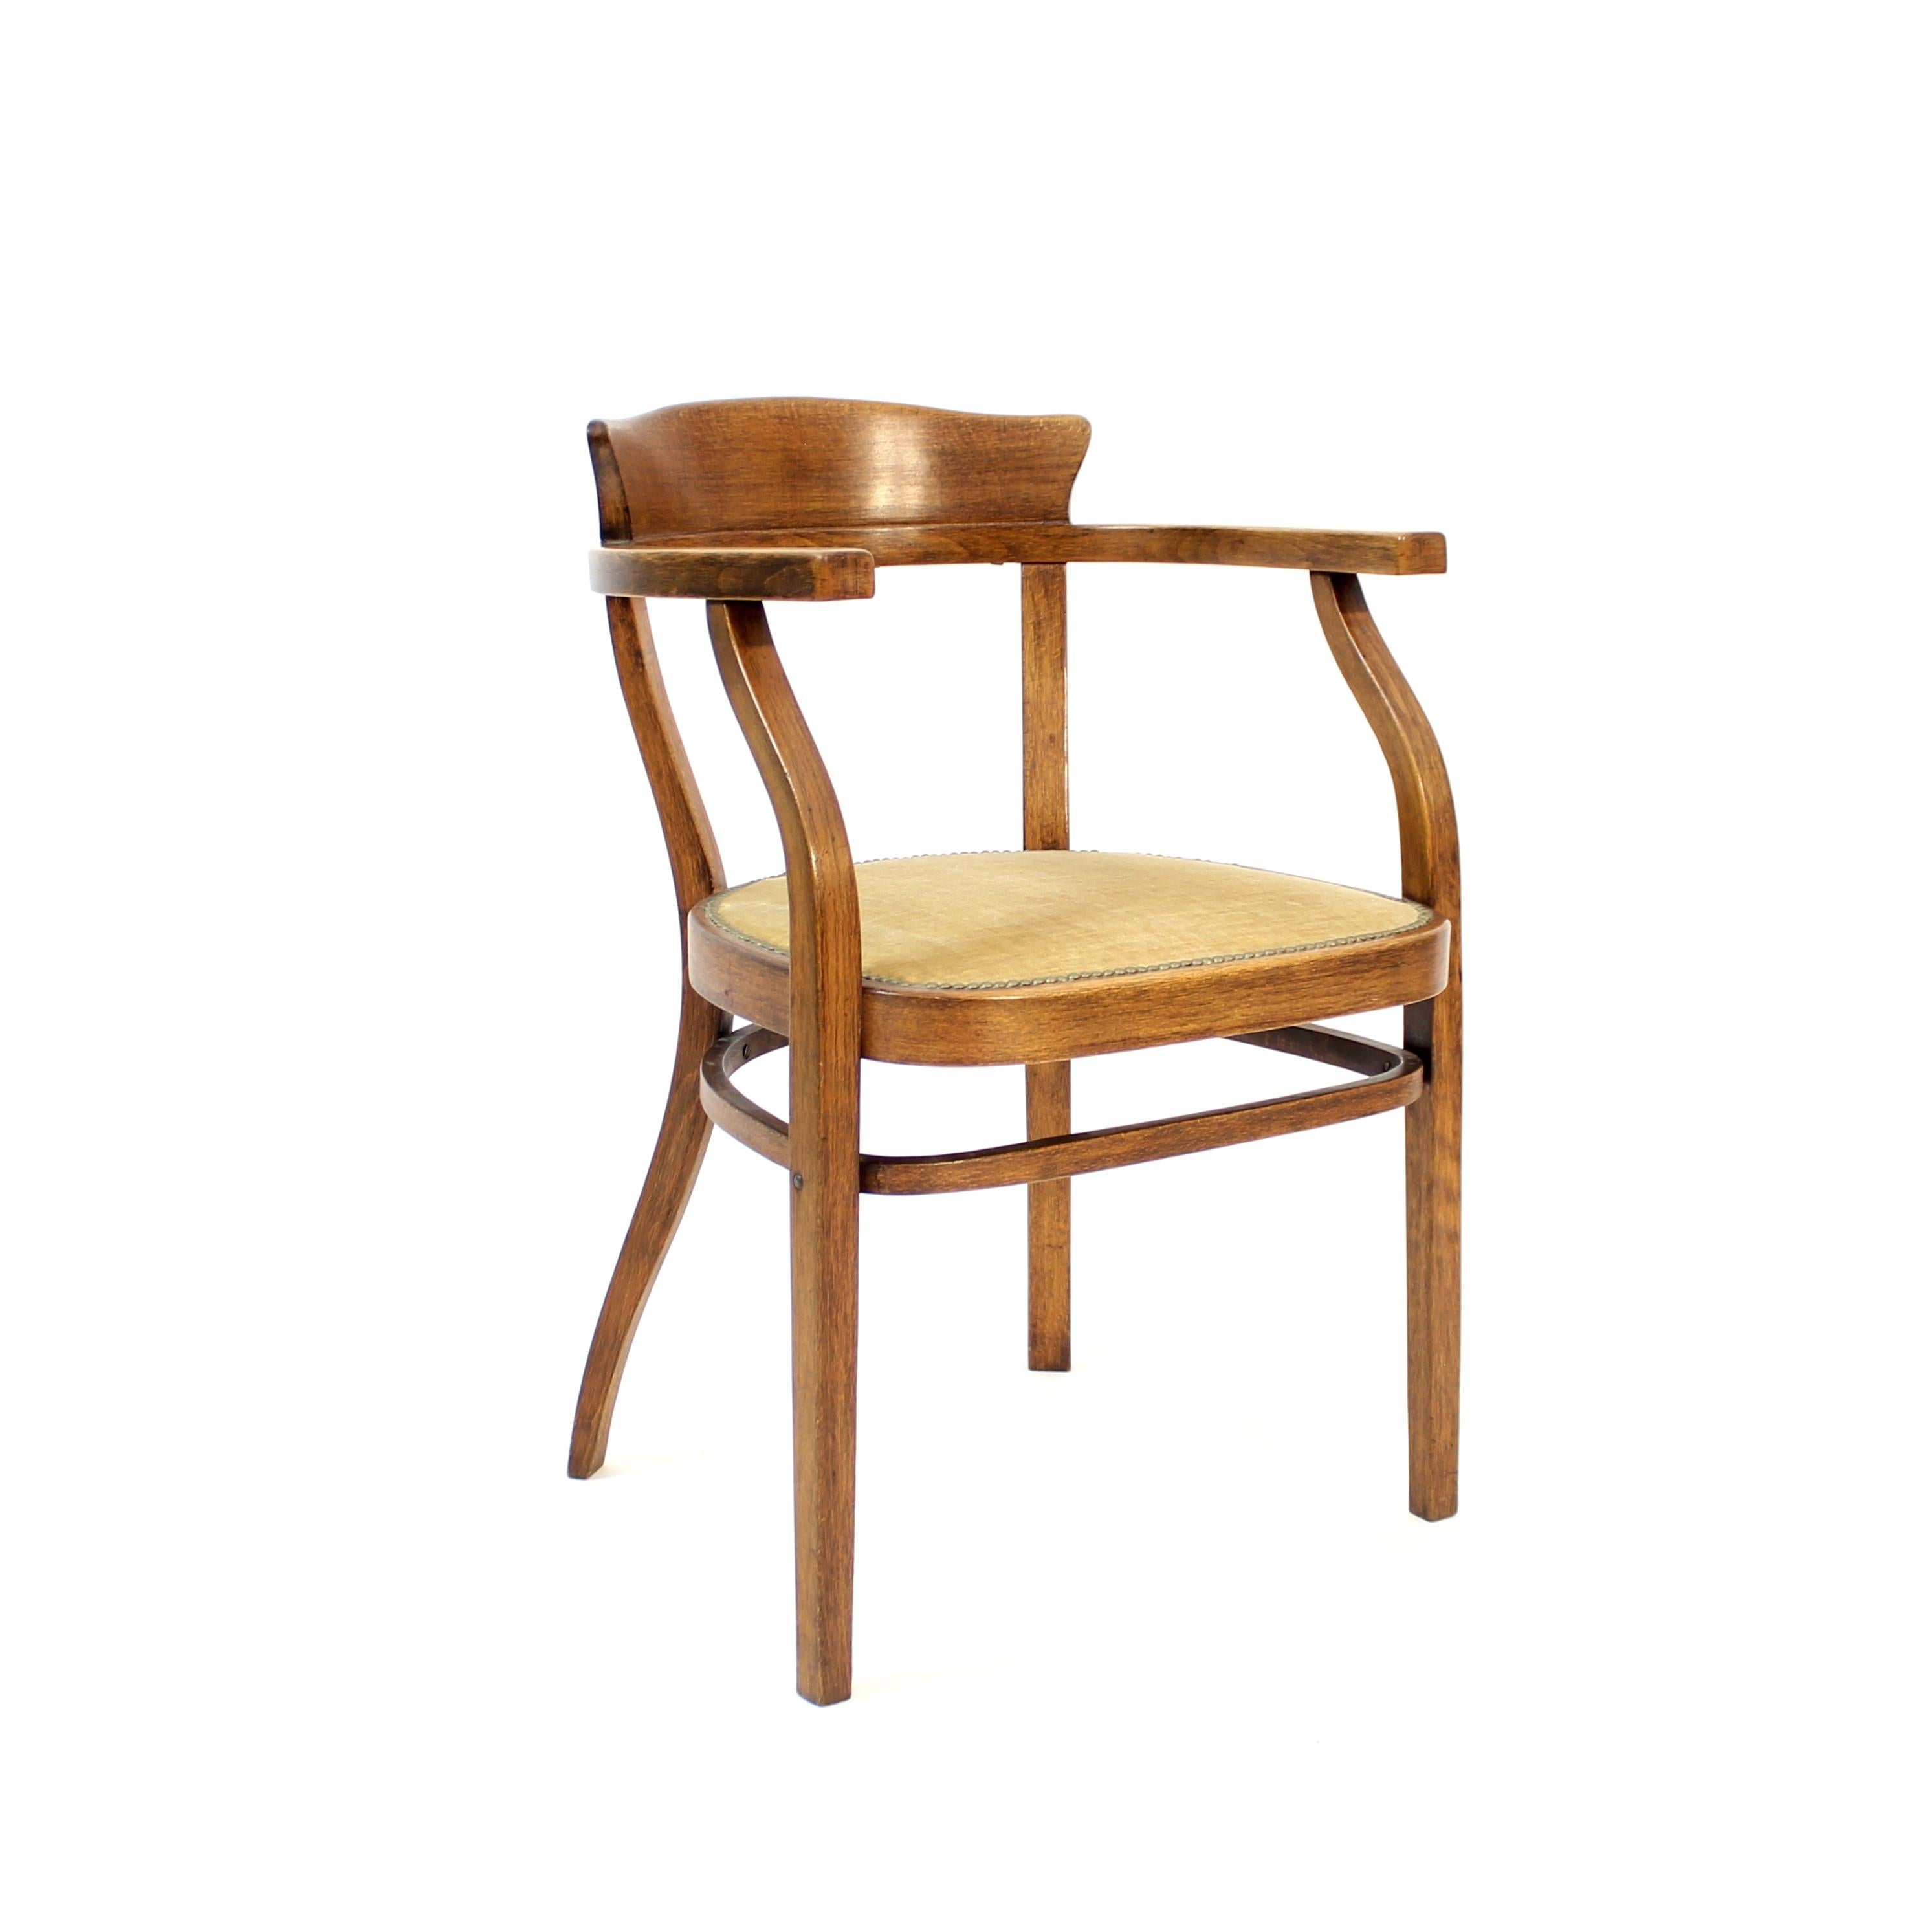 Fauteuil en bois courbé avec assise en velours fabriqué par Thonet au début du 20e siècle. Le tissu de l'assise est probablement d'origine. Estampillé et avec l'autocollant original du fabricant.  Bon état vintage avec des dommages normaux sur le